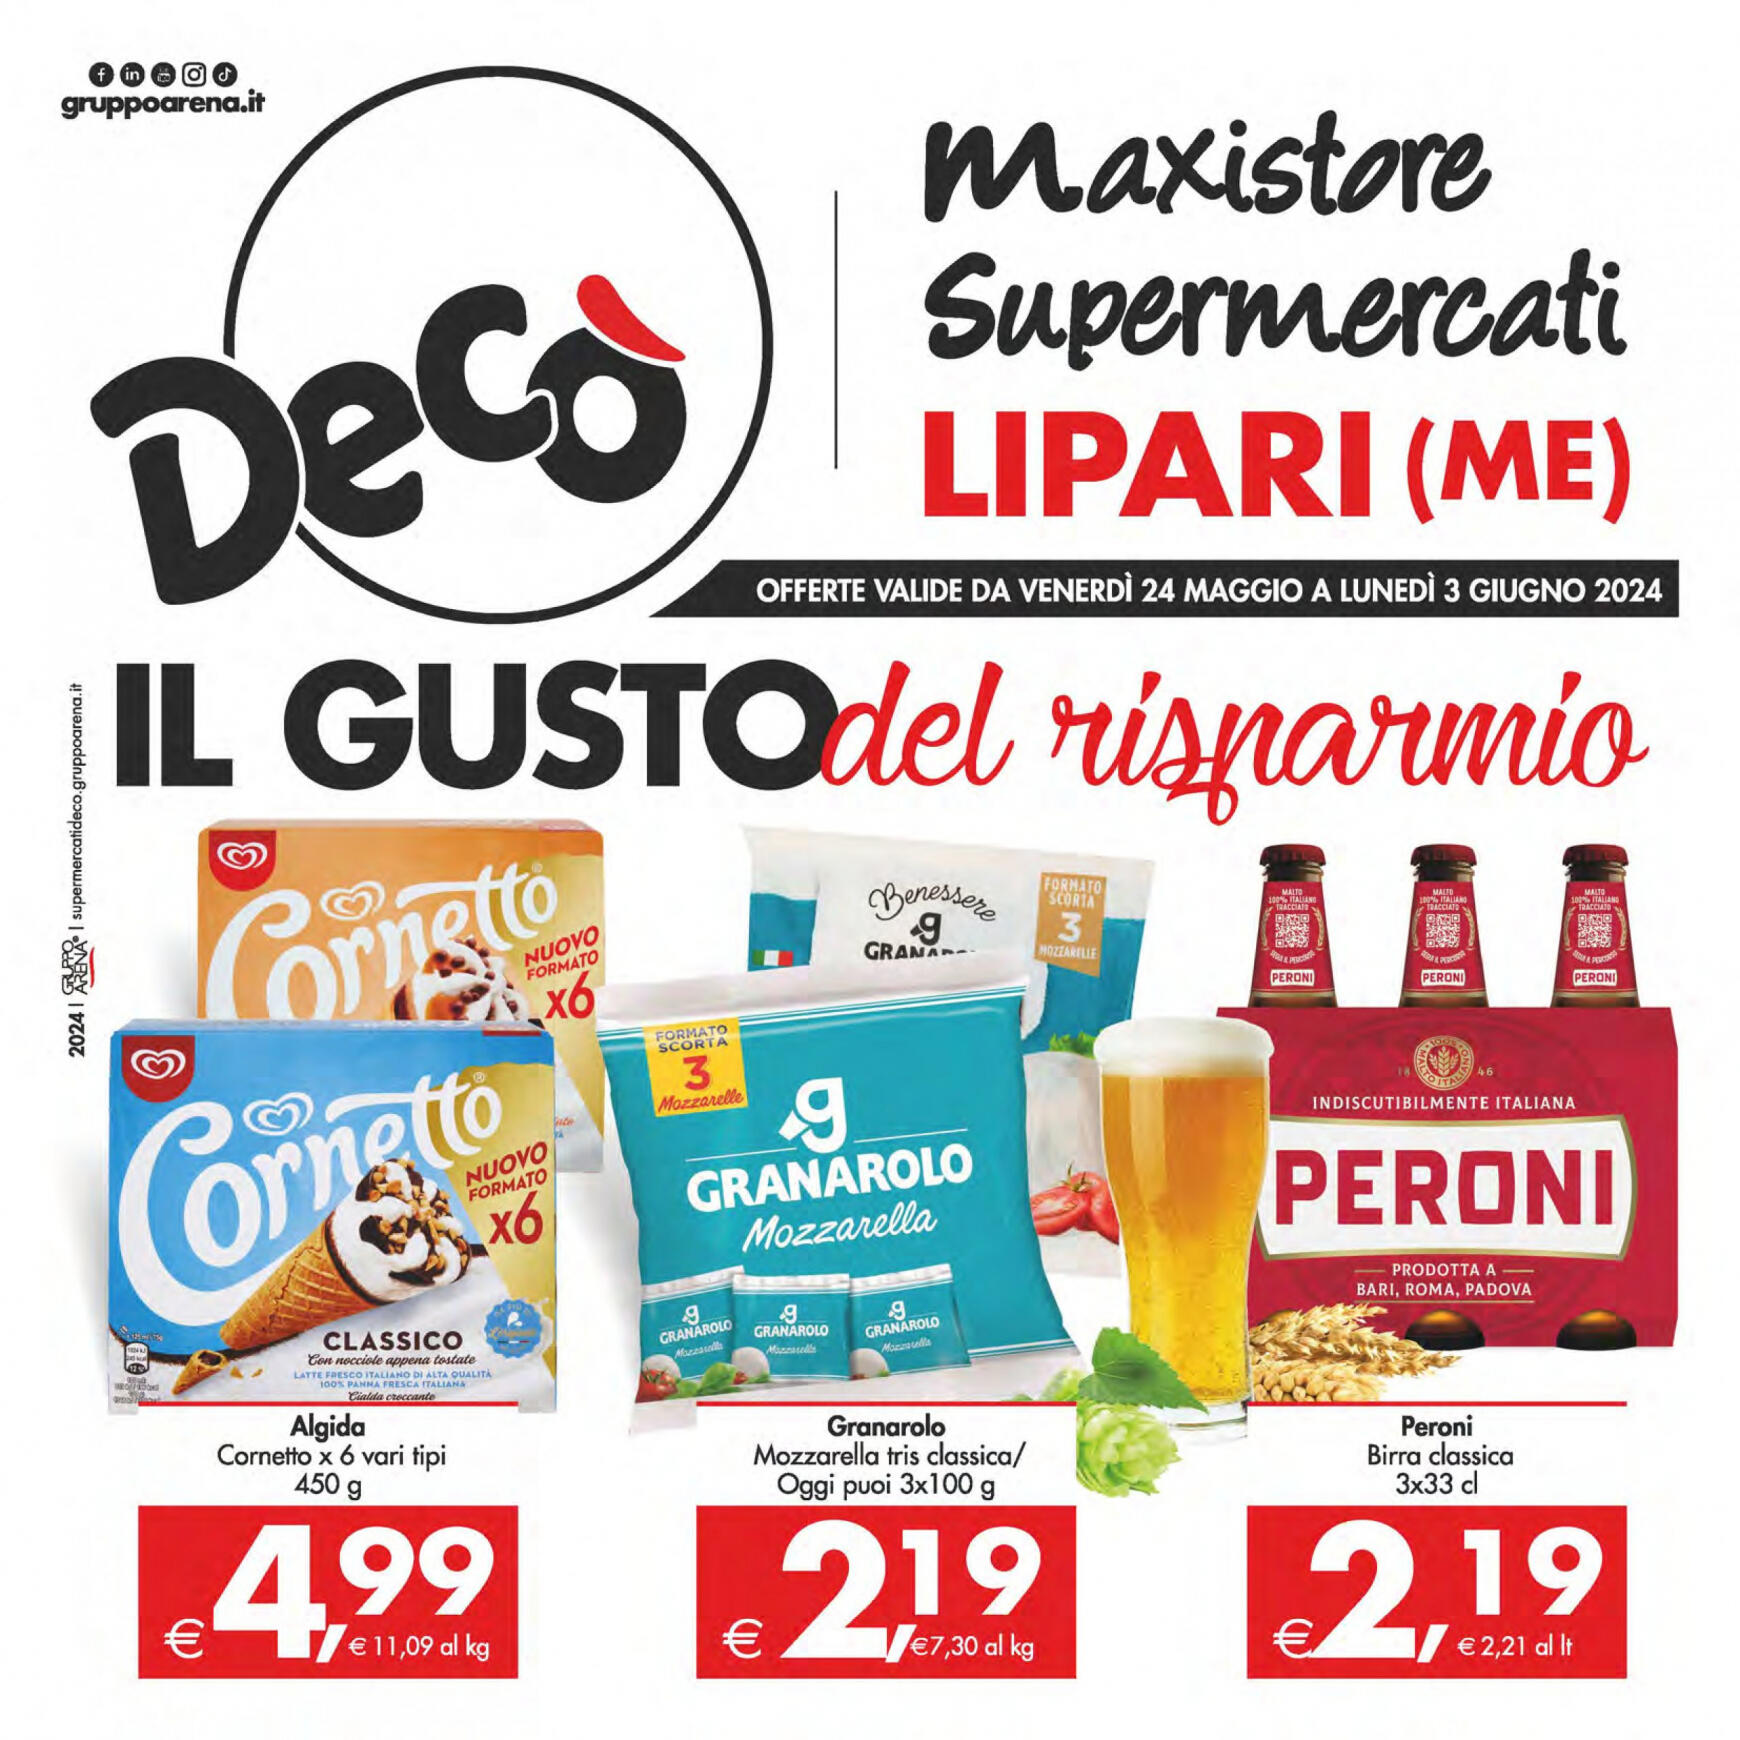 deco - Nuovo volantino Decò - Maxistore/Supermercati/Local Lipari 24.05. - 03.06.